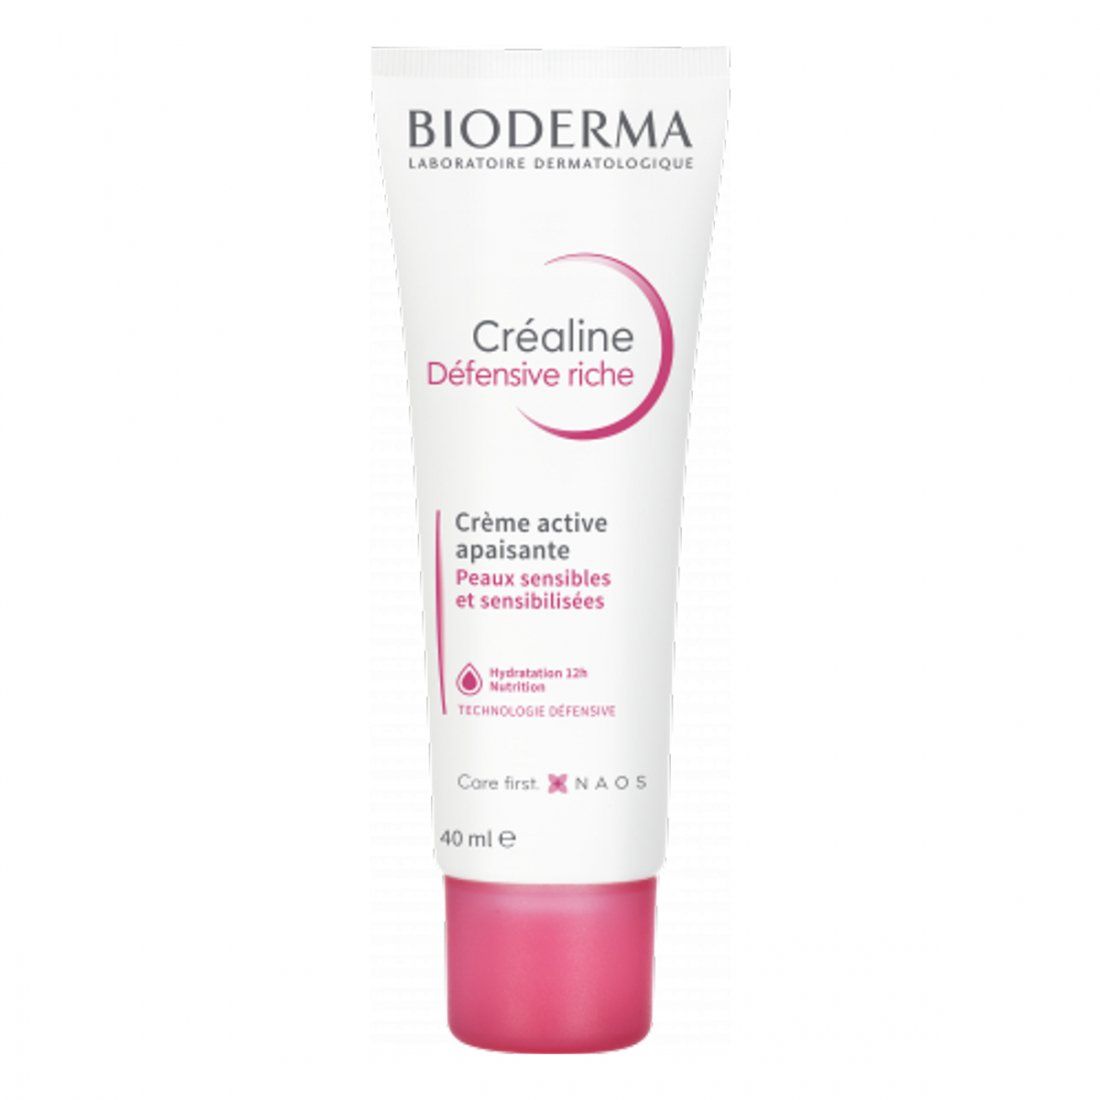 Bioderma - Crème Riche 'Créaline Défensive' - 40 ml